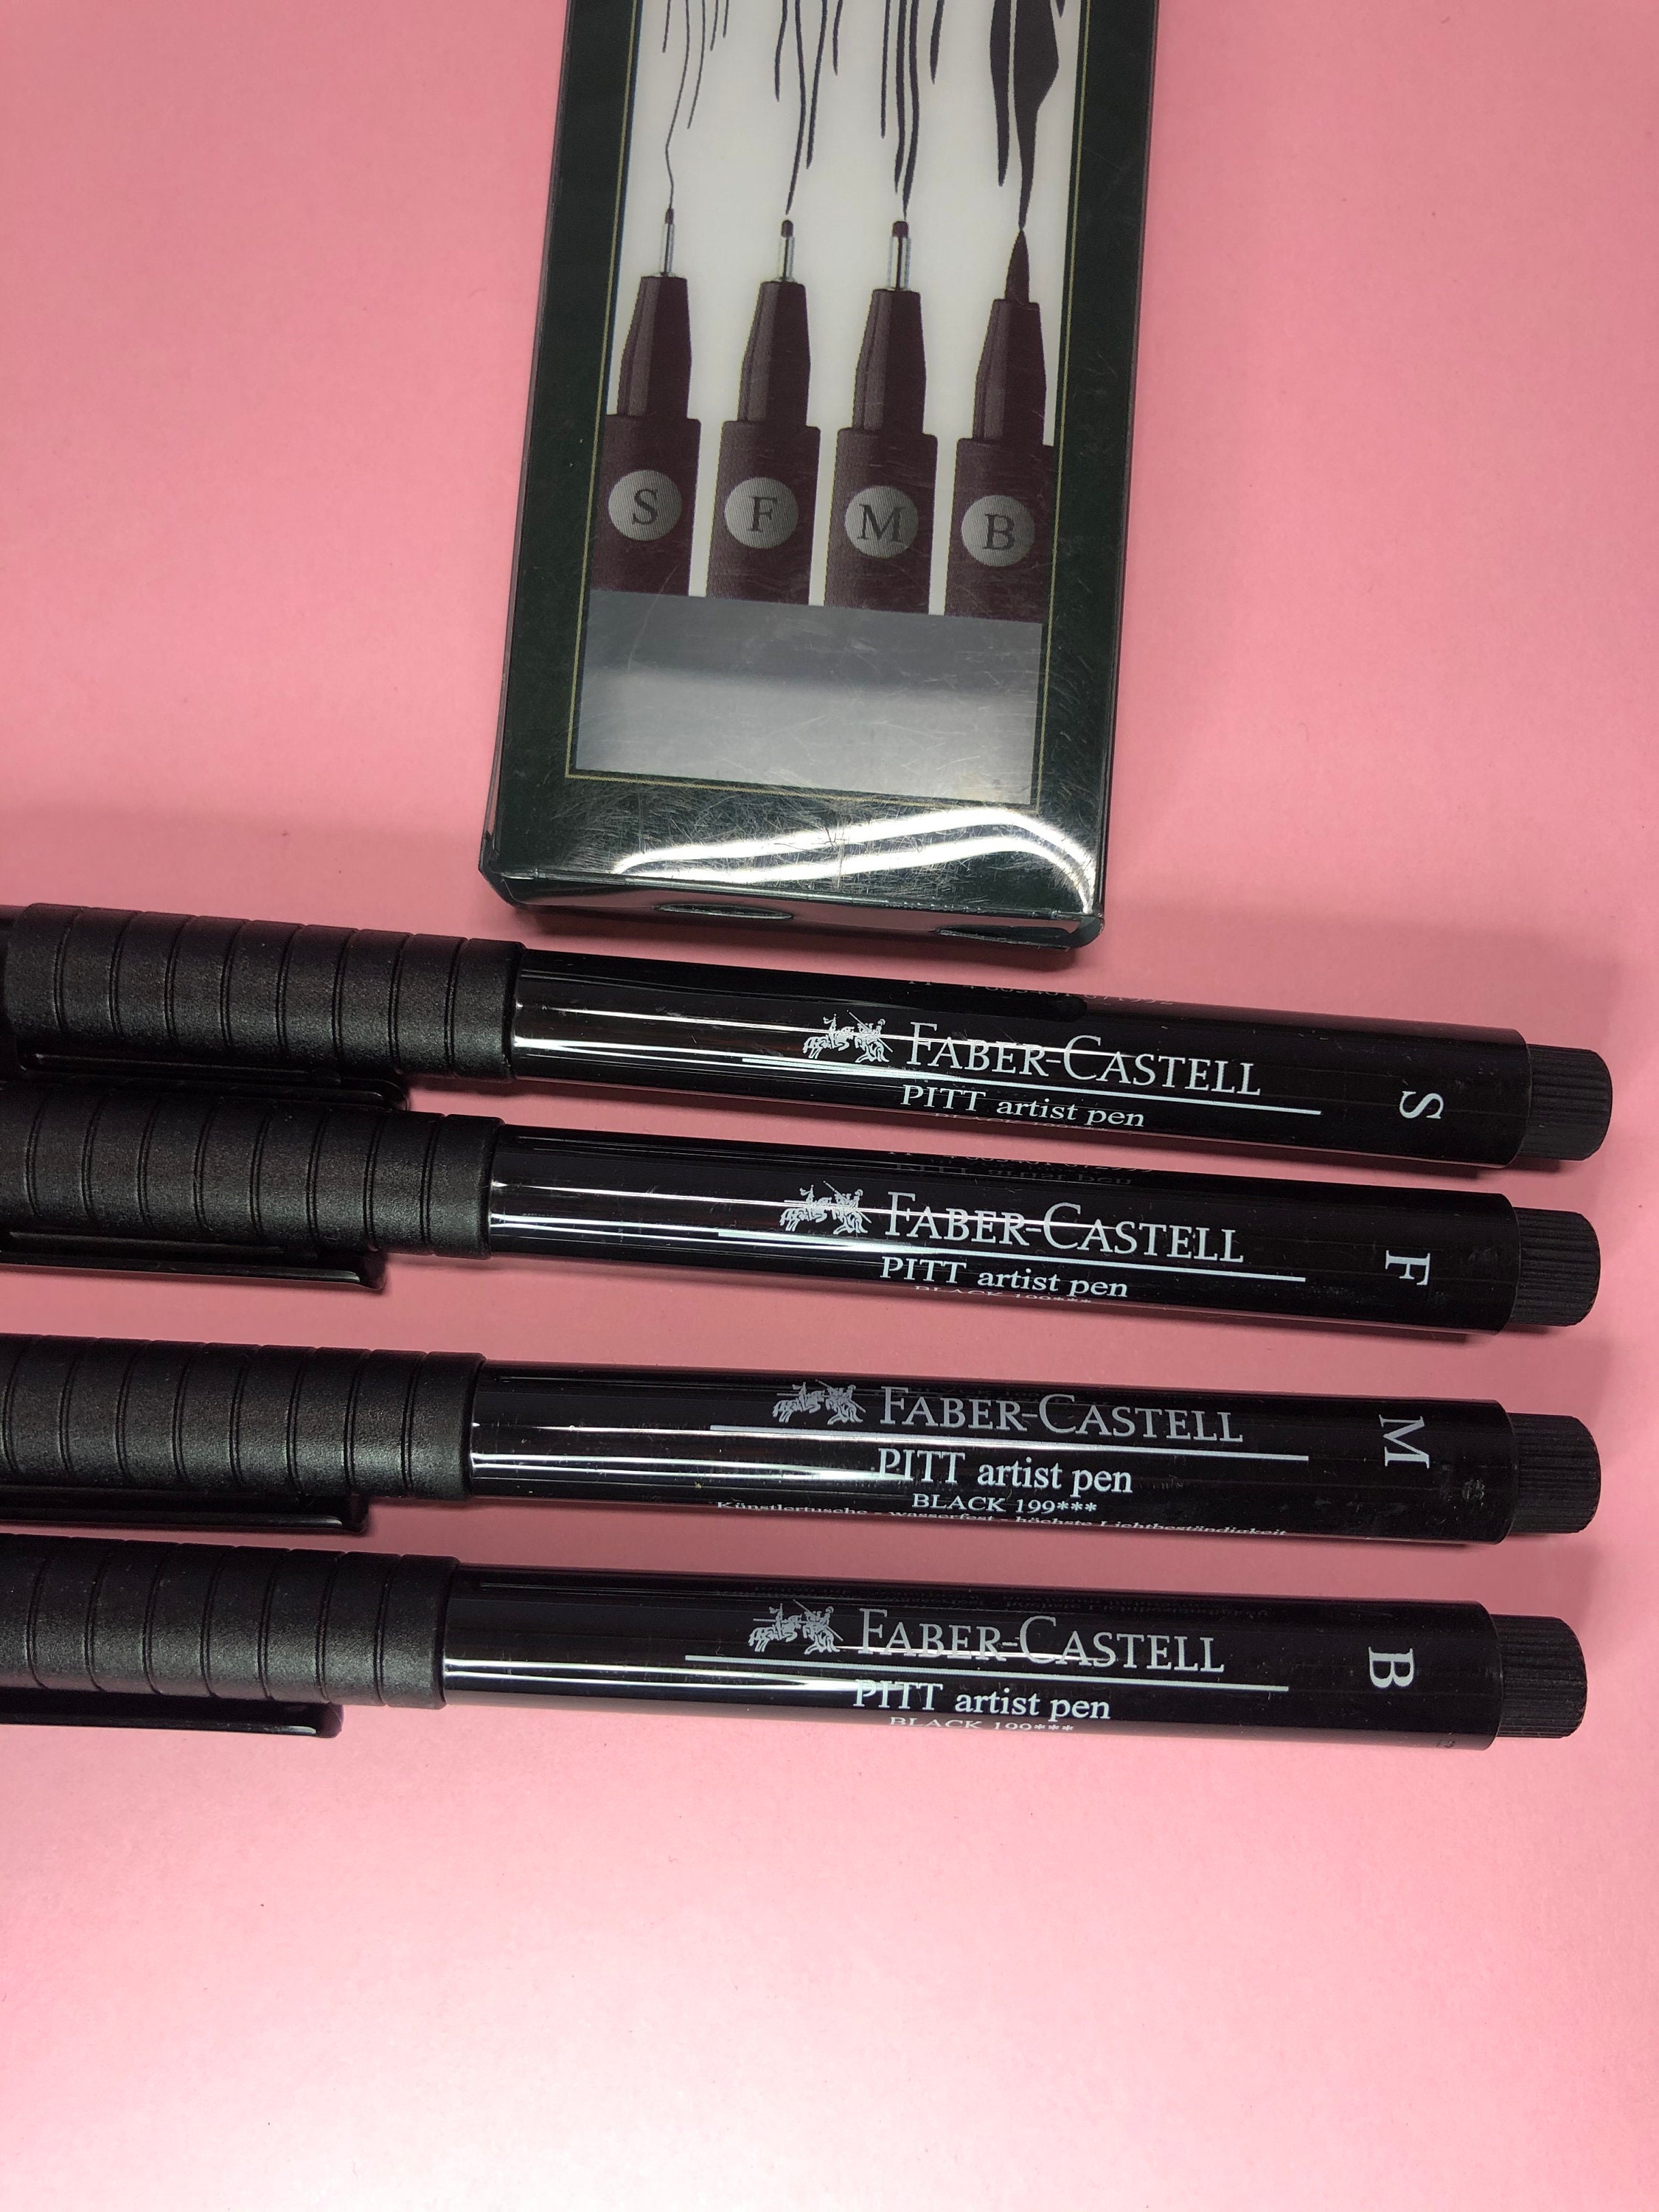 Uni Pin Fineliner Drawing Pen - Complete Set of 9 Grades - Black Ink